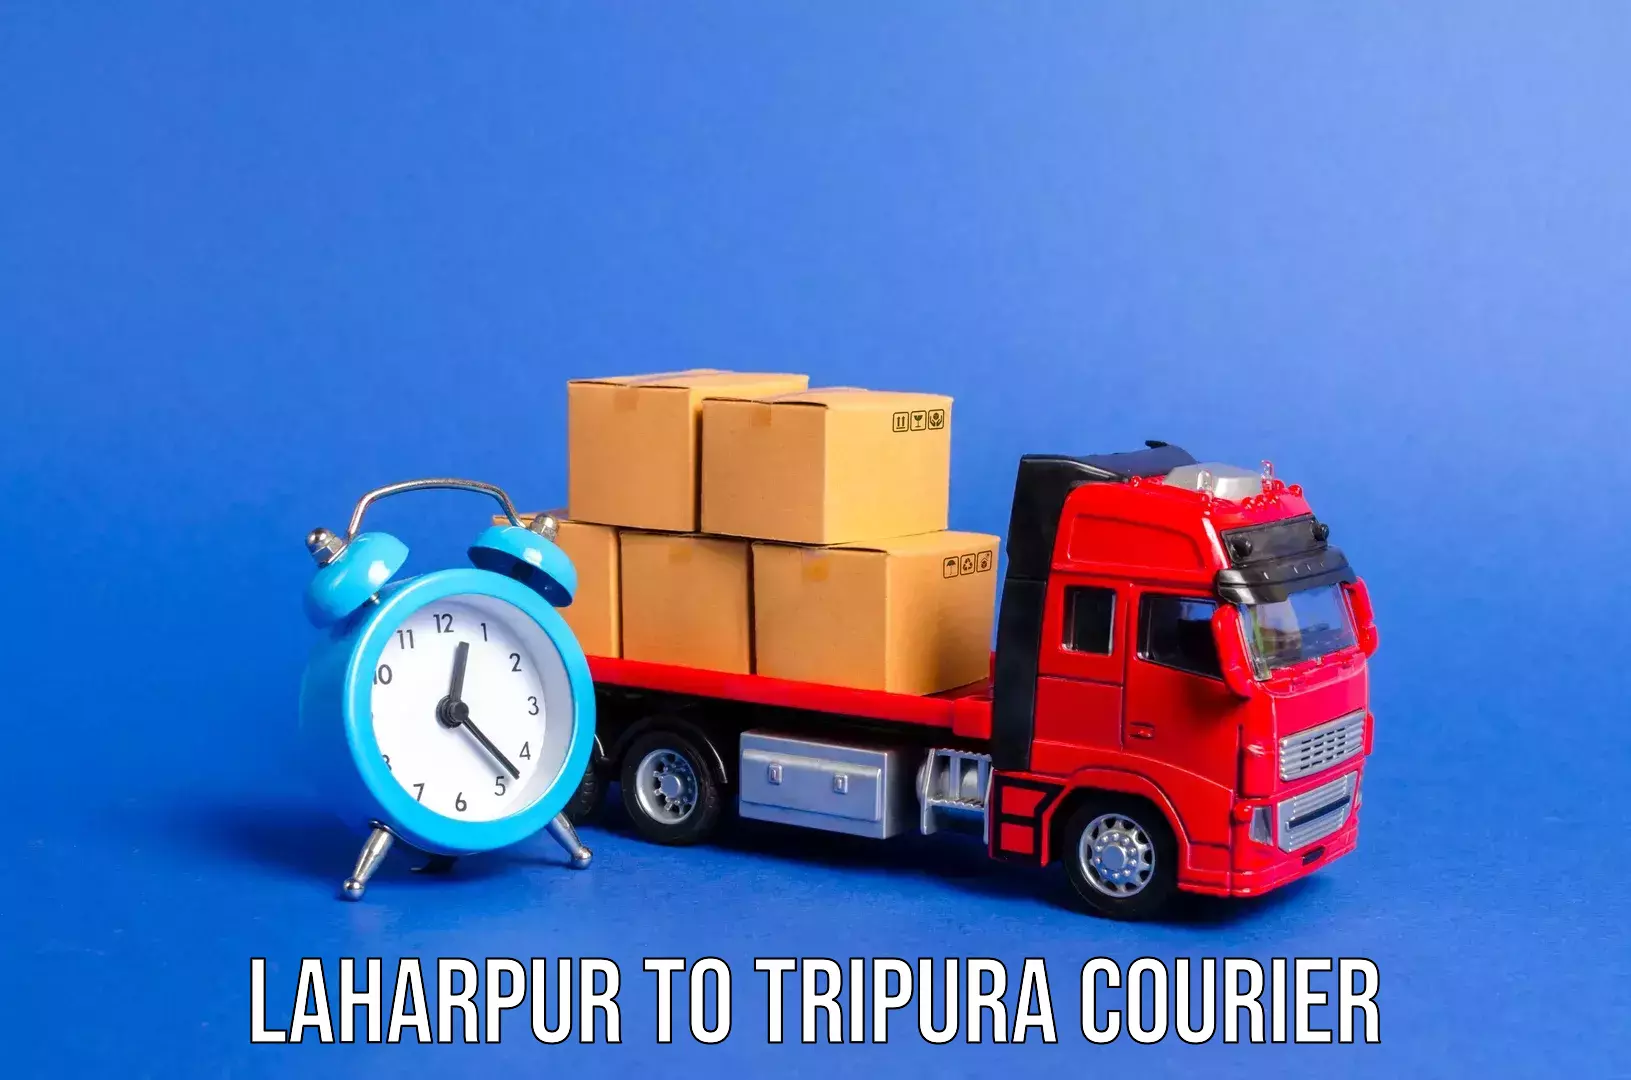 Luggage delivery providers Laharpur to Kamalpur